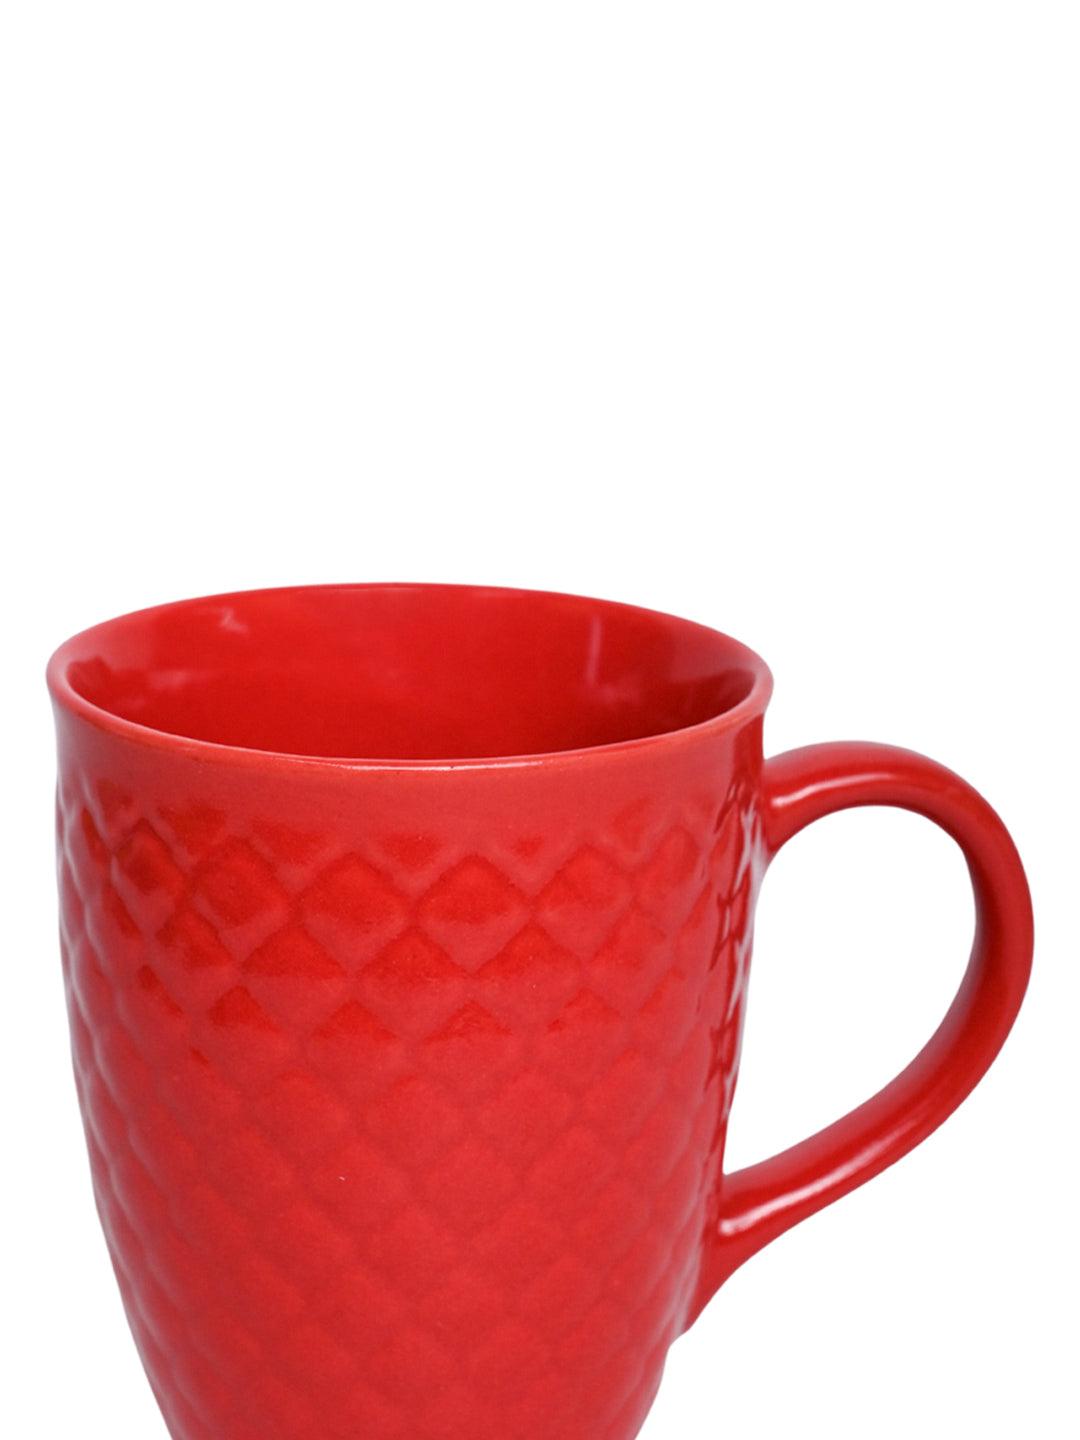 VON CASA Ceramic Coffee Mug - 320 Ml, Red - MARKET 99